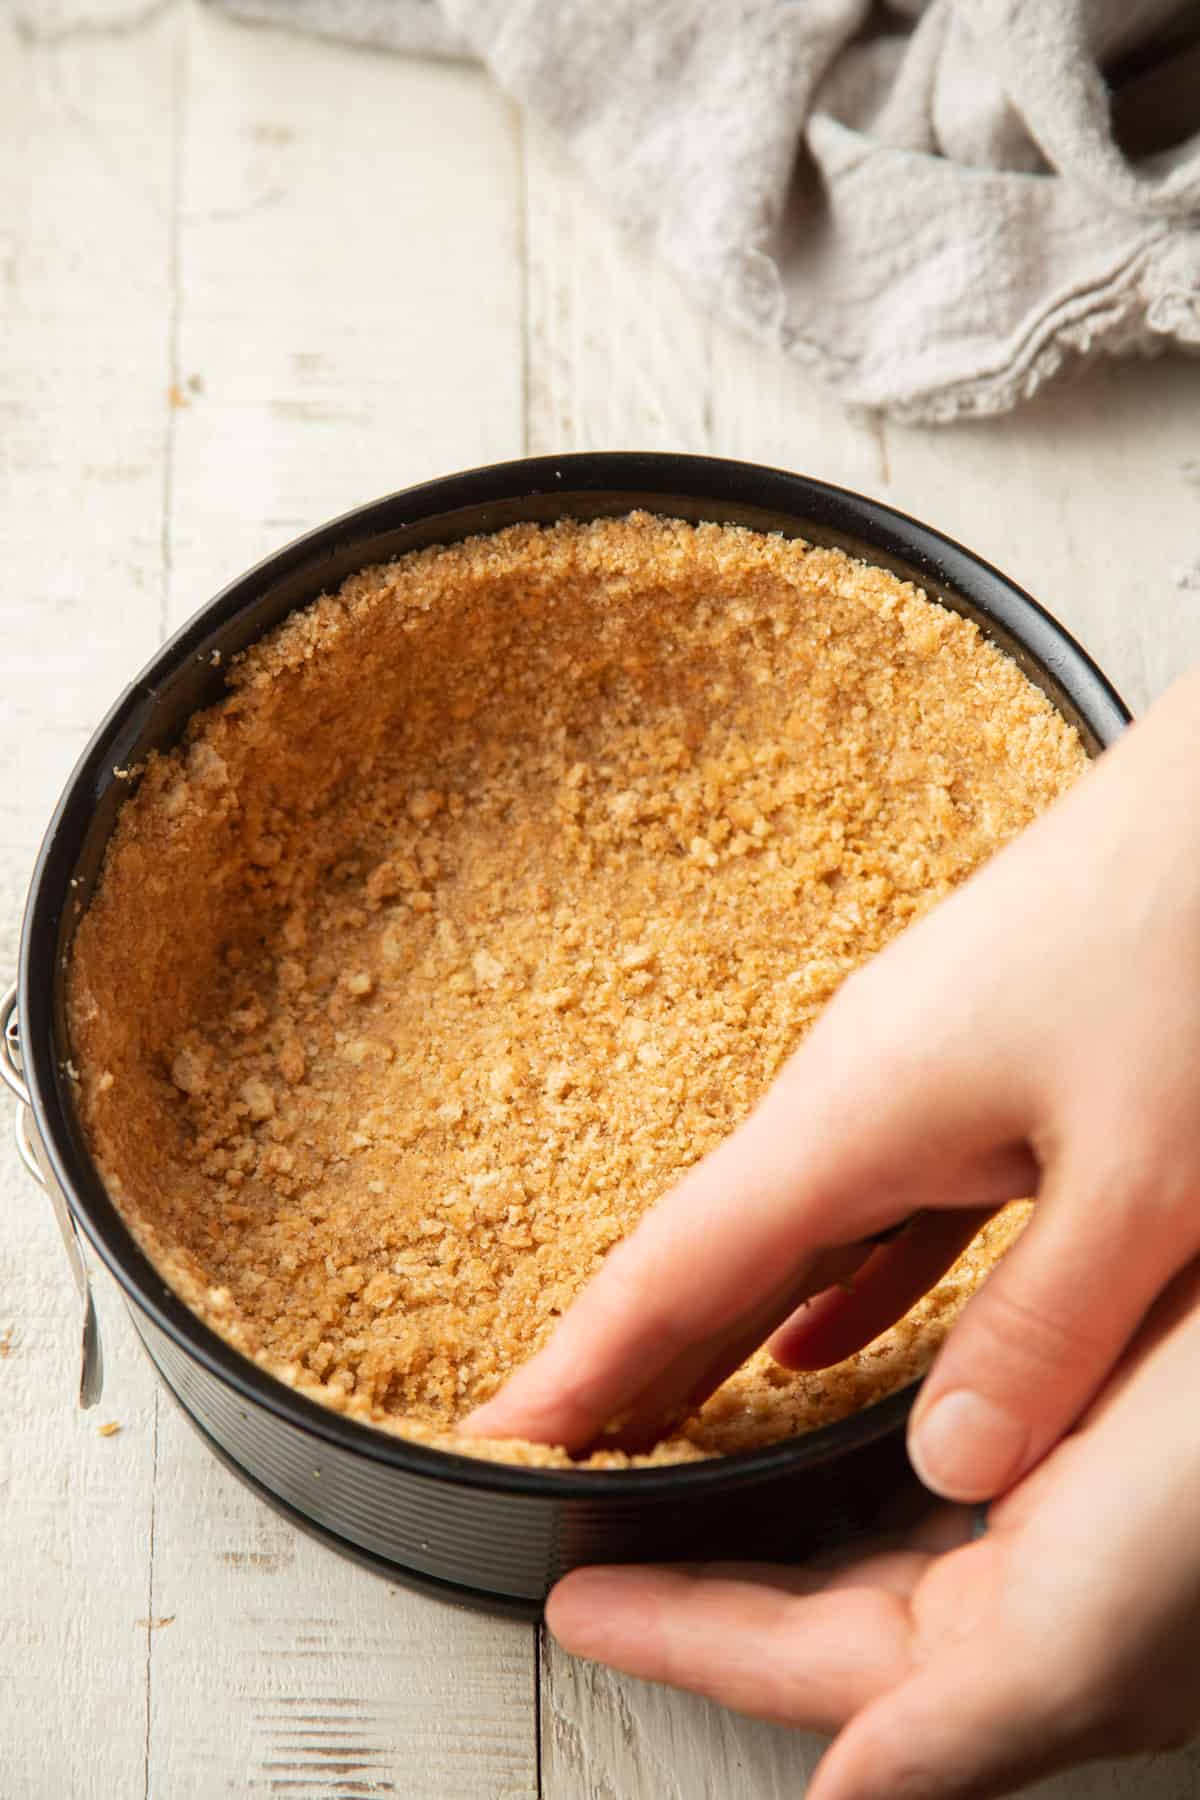 Presione a mano la mezcla de migas de galleta graham en un molde desmontable.